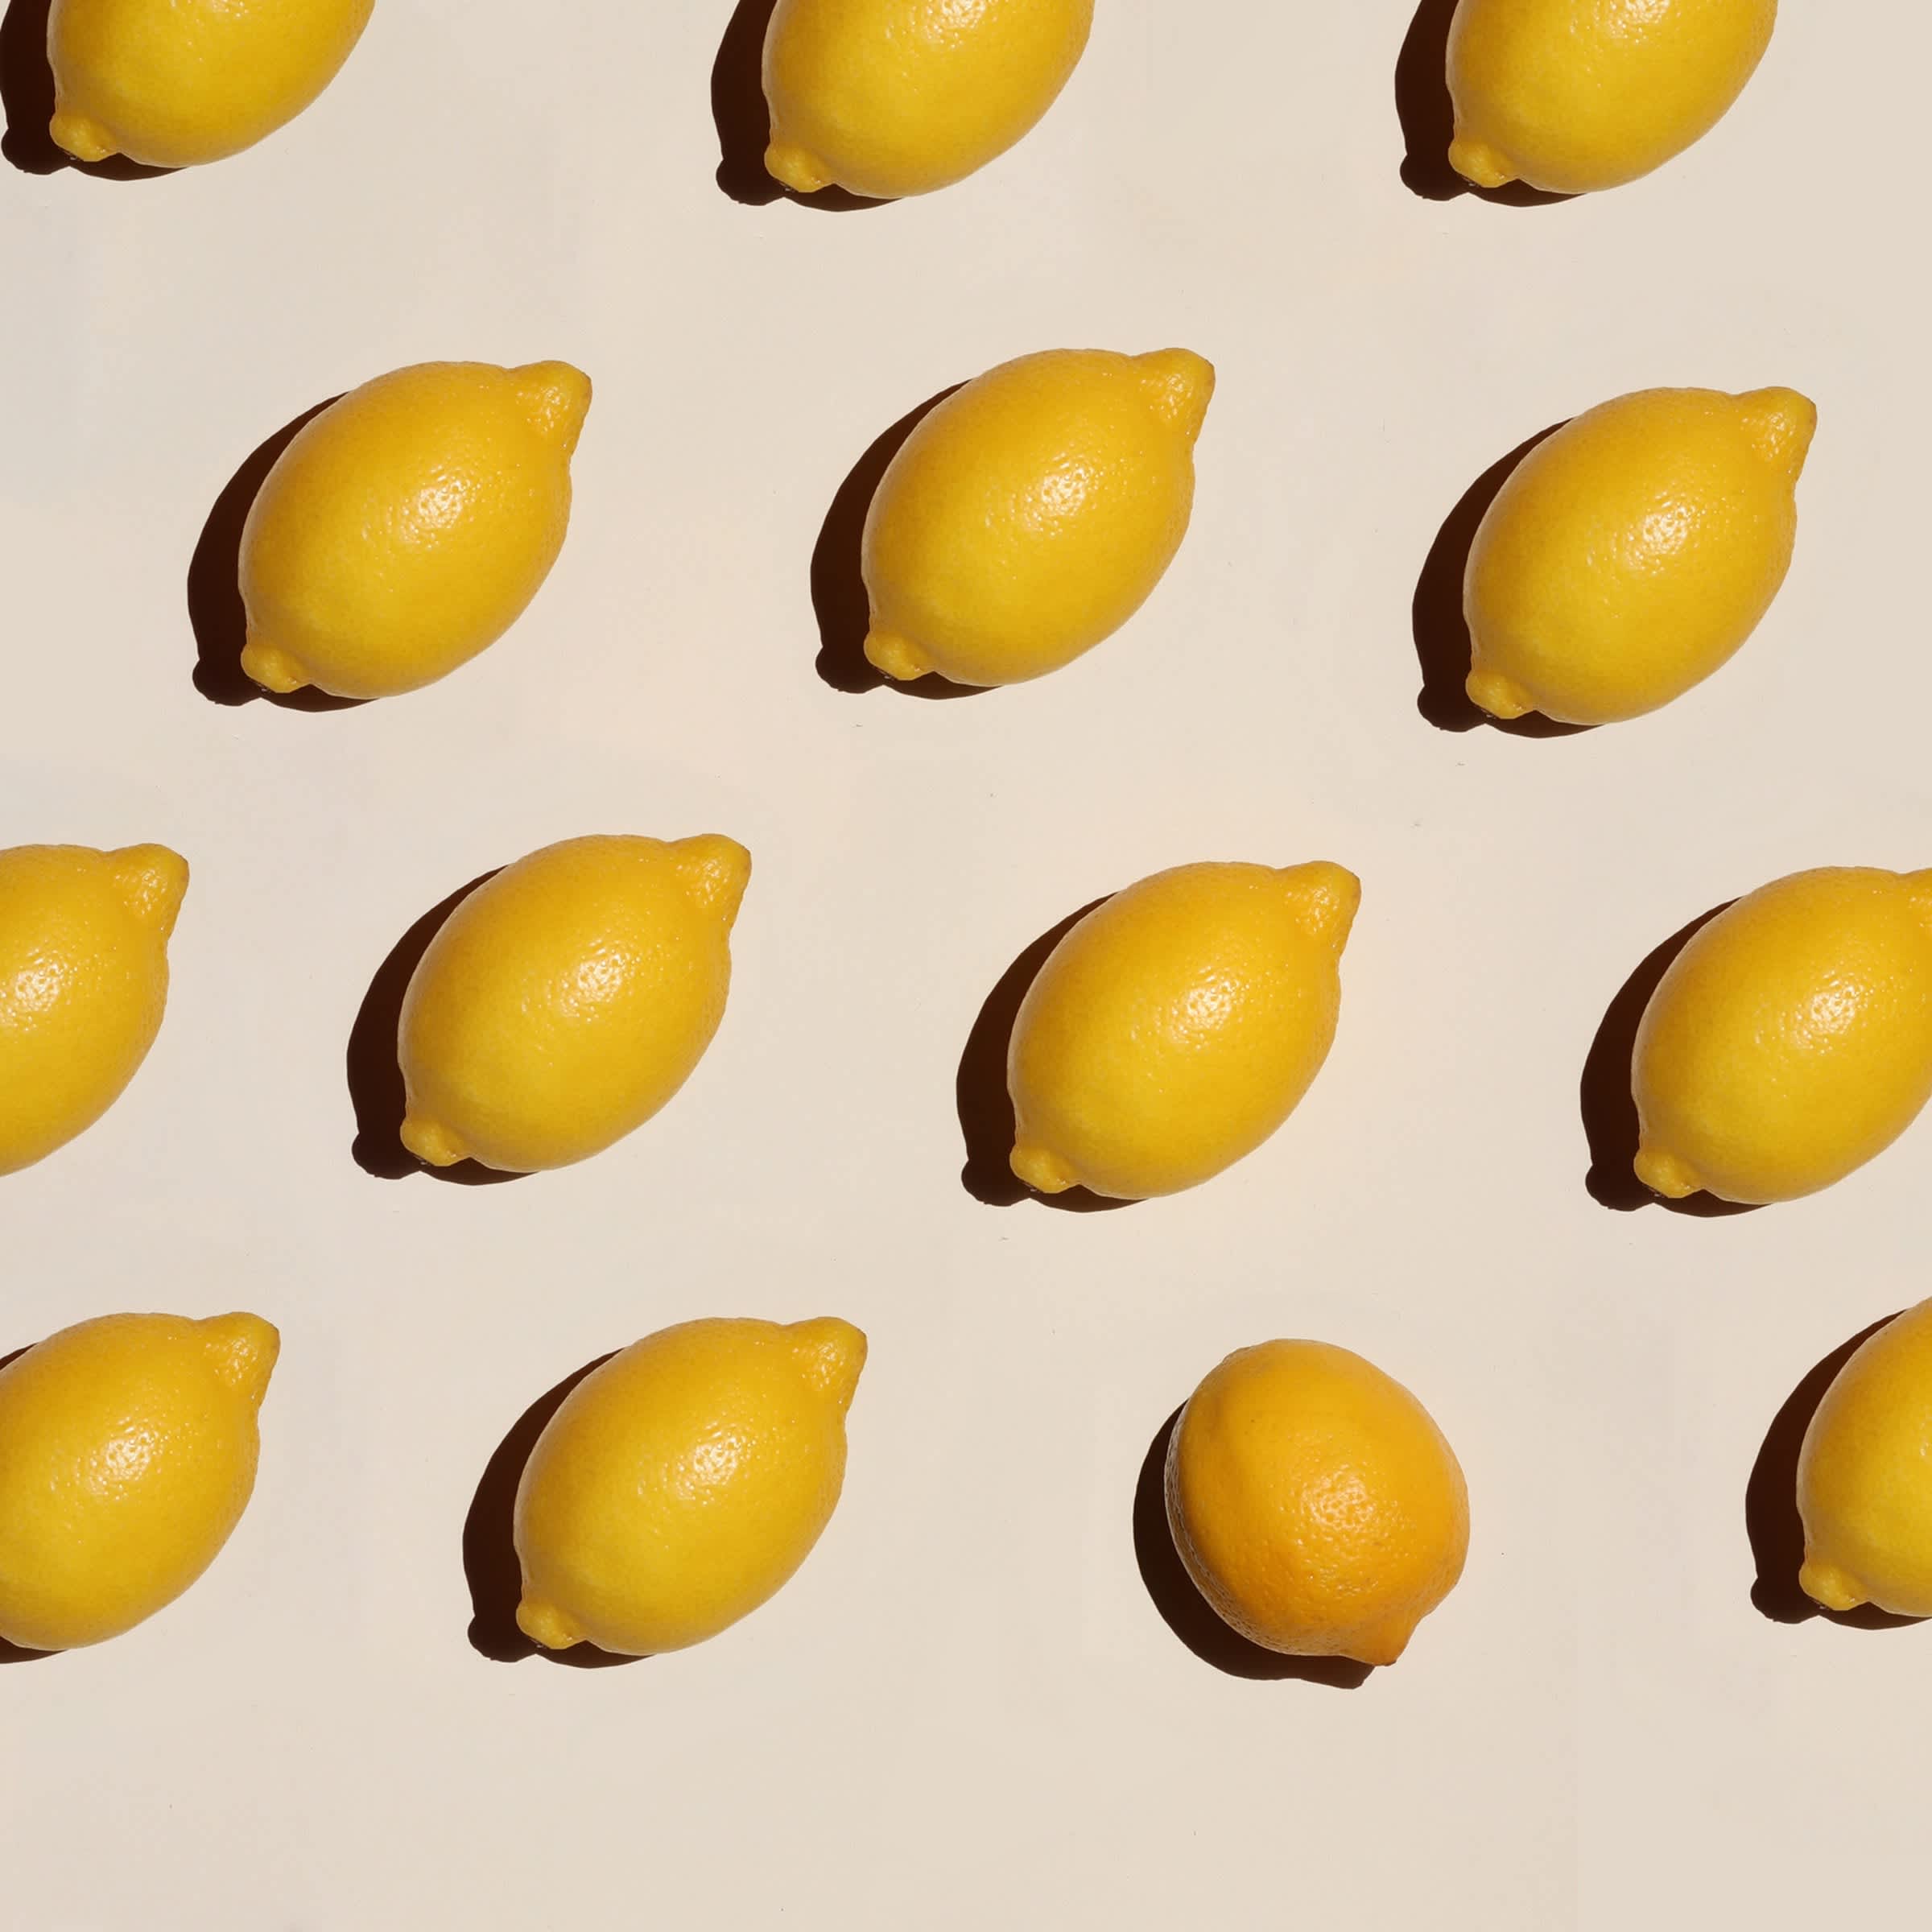 Yellow lemons on a table